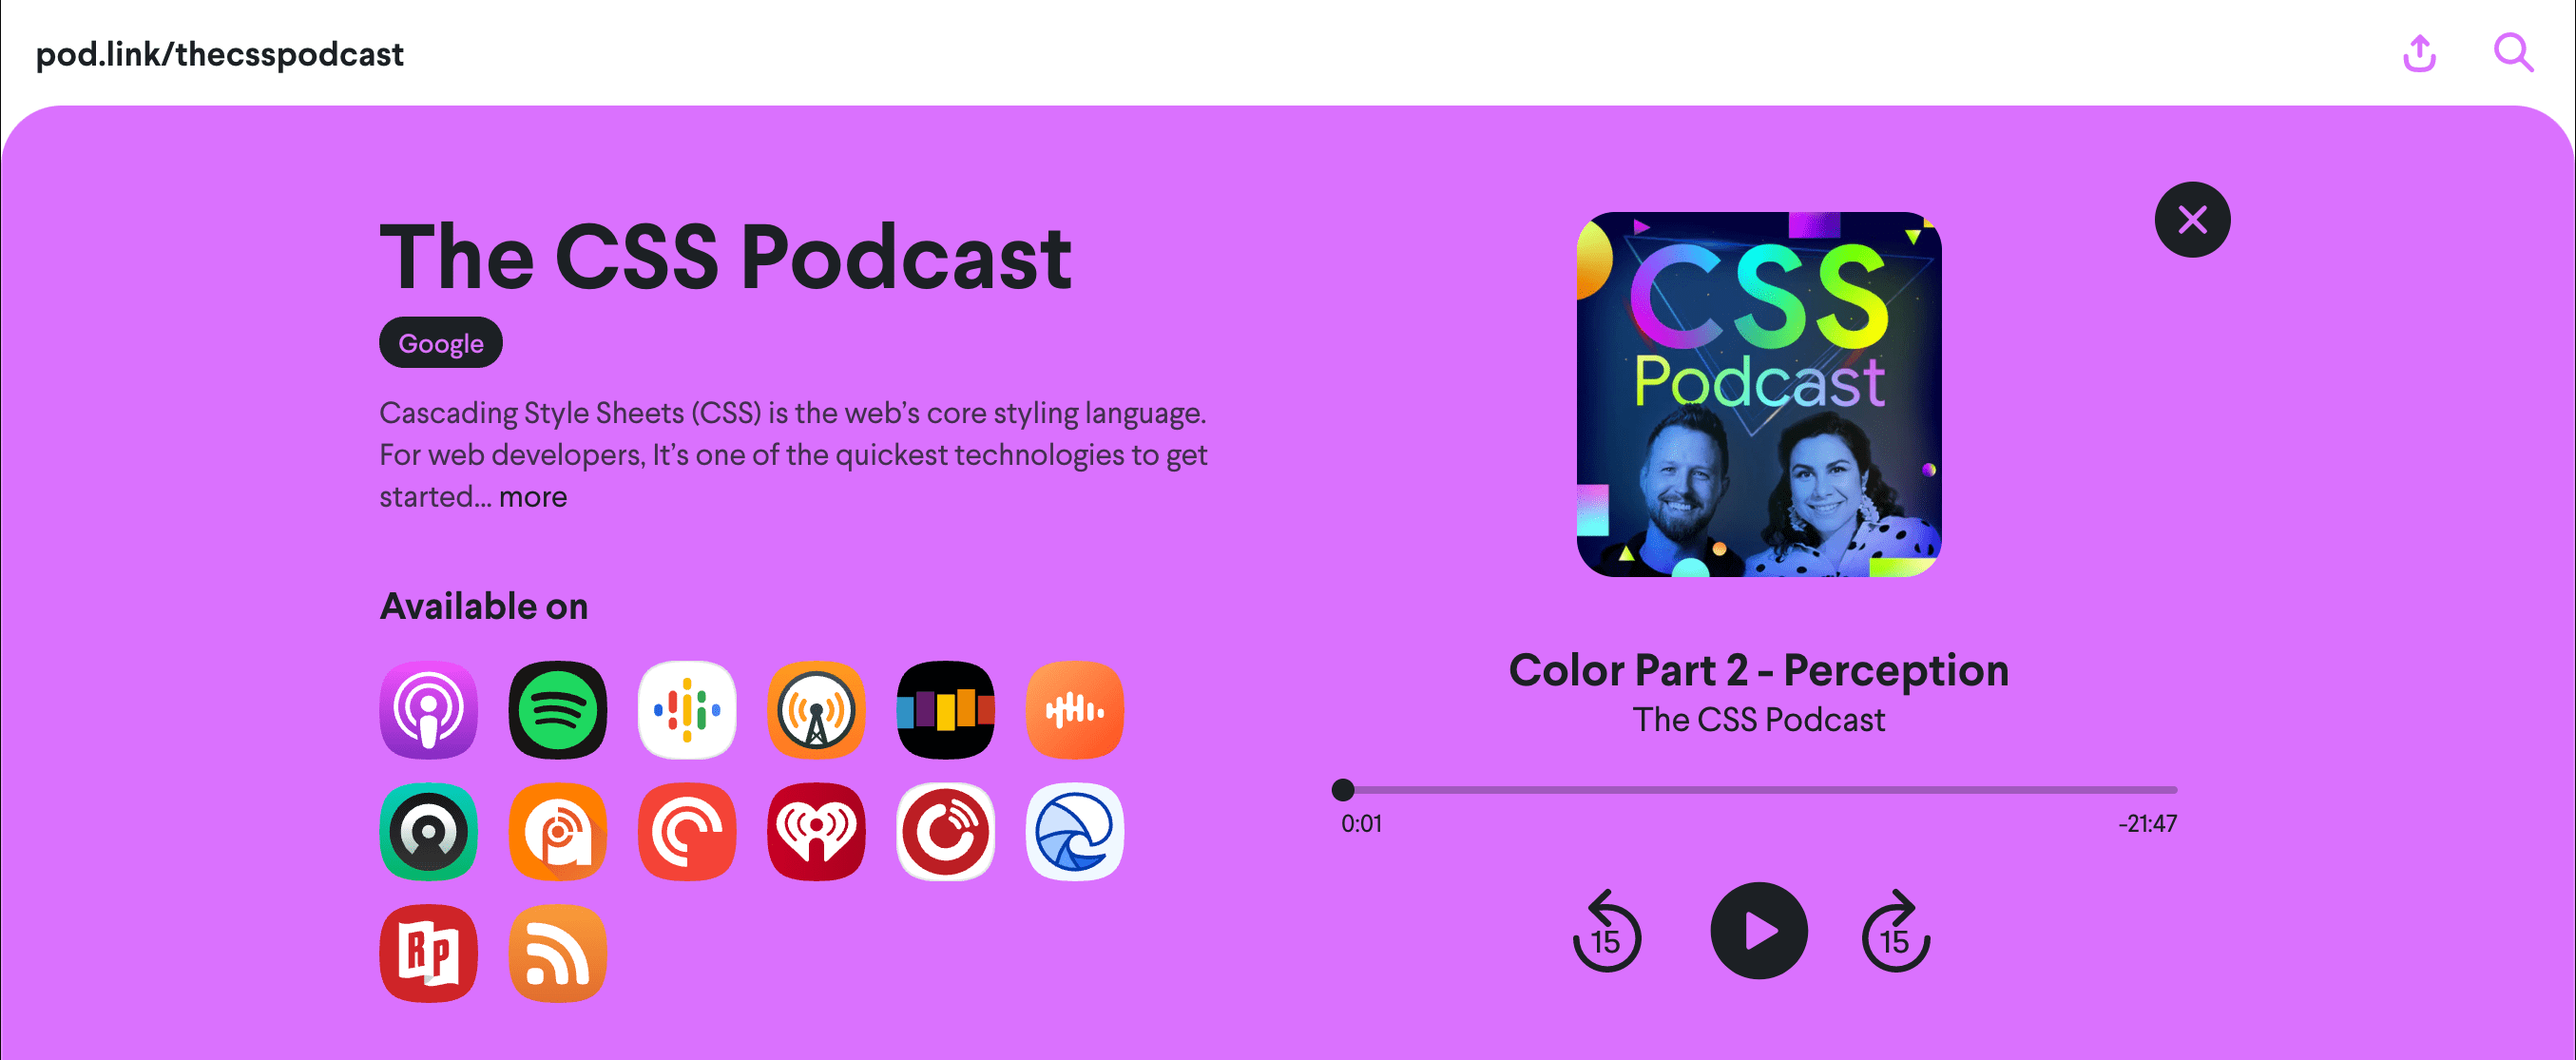 Скриншот веб-страницы pod.link/csspodcast с эпизодом «Цвет 2: Восприятие».